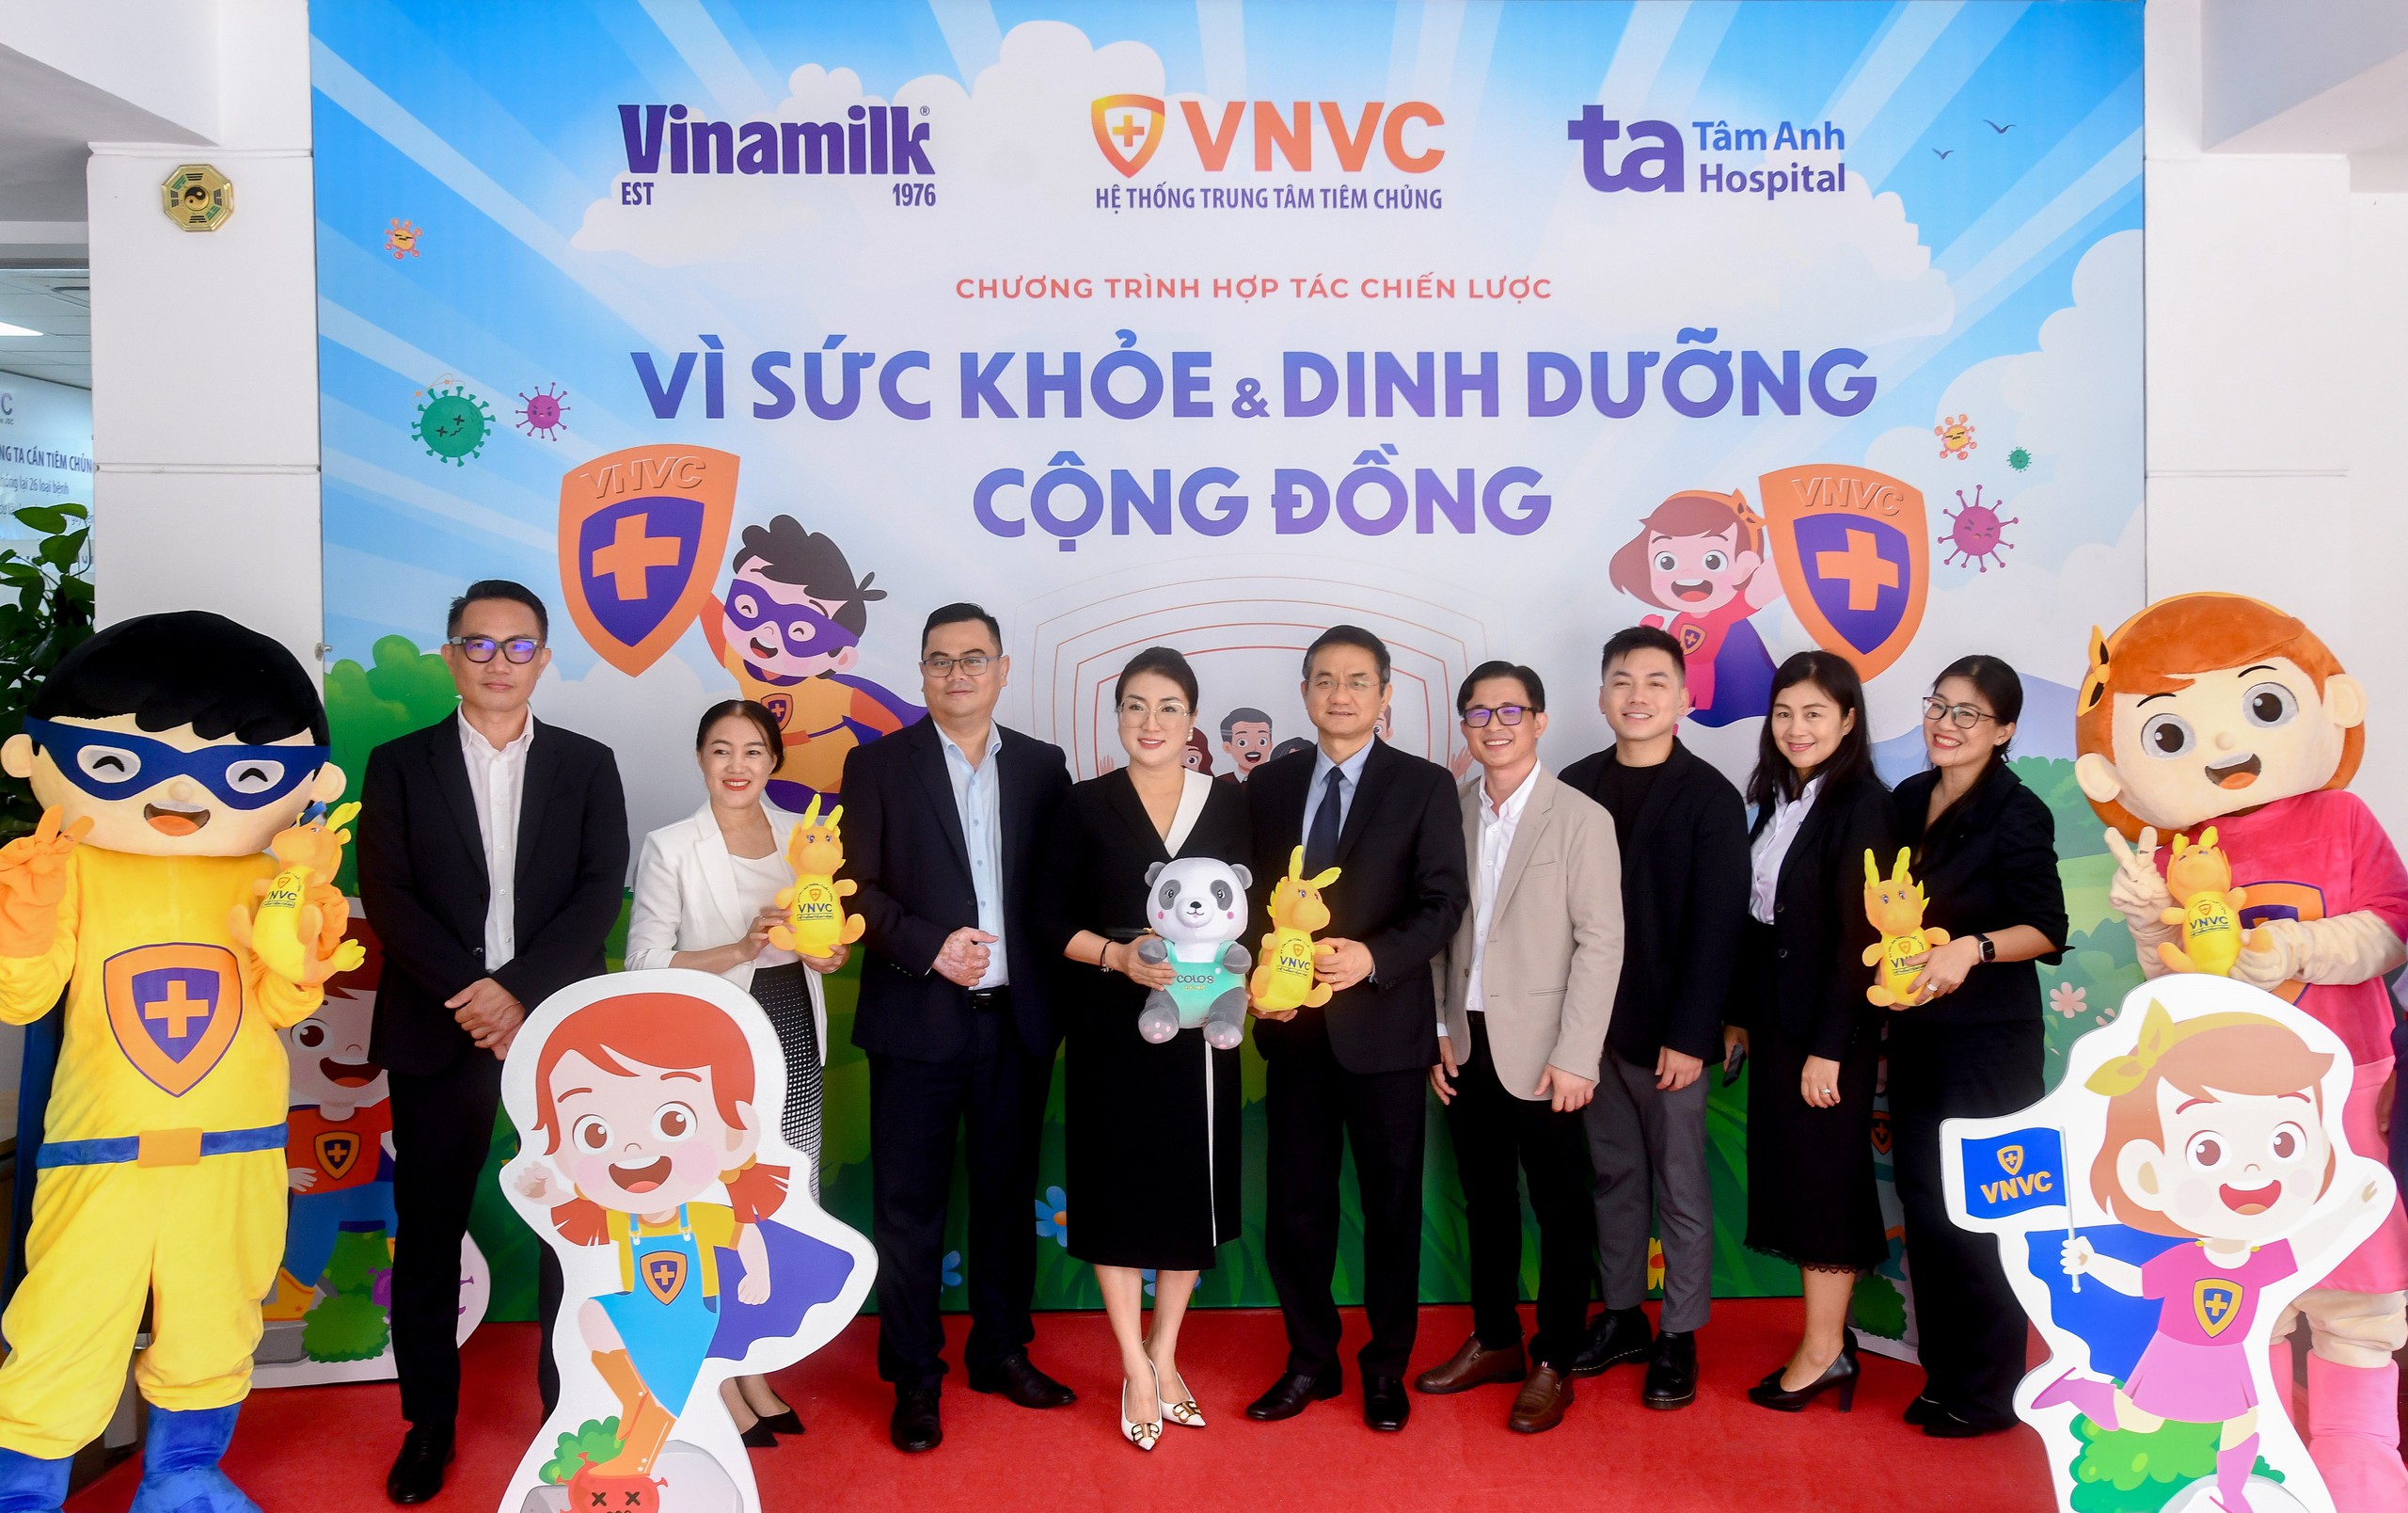 Vinamilk ký hợp tác chiến lược cùng VNVC, Bệnh viện Tâm Anh để tăng cường chăm sóc sức khỏe cộng đồng- Ảnh 3.